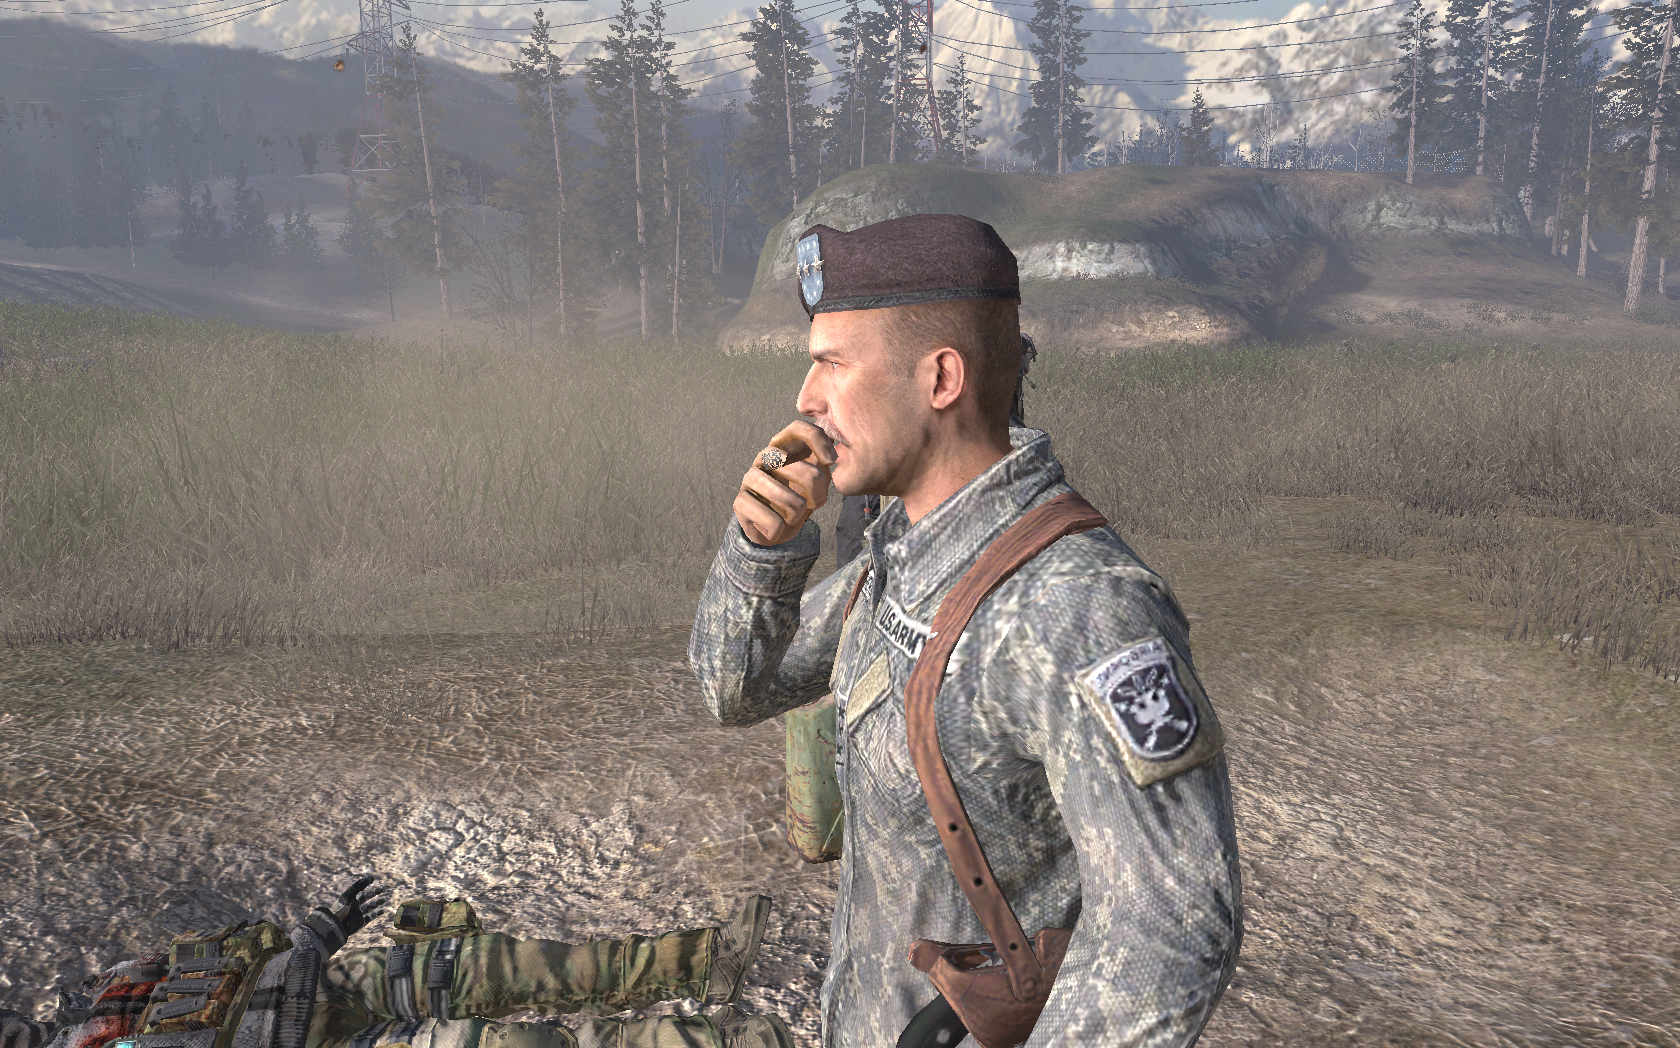 Генерал Шепард. Modern Warfare 2 генерал Шепард. Генерал Шепард Call of Duty. Шепард предатель Call of Duty Modern Warfare 2. Почему колду